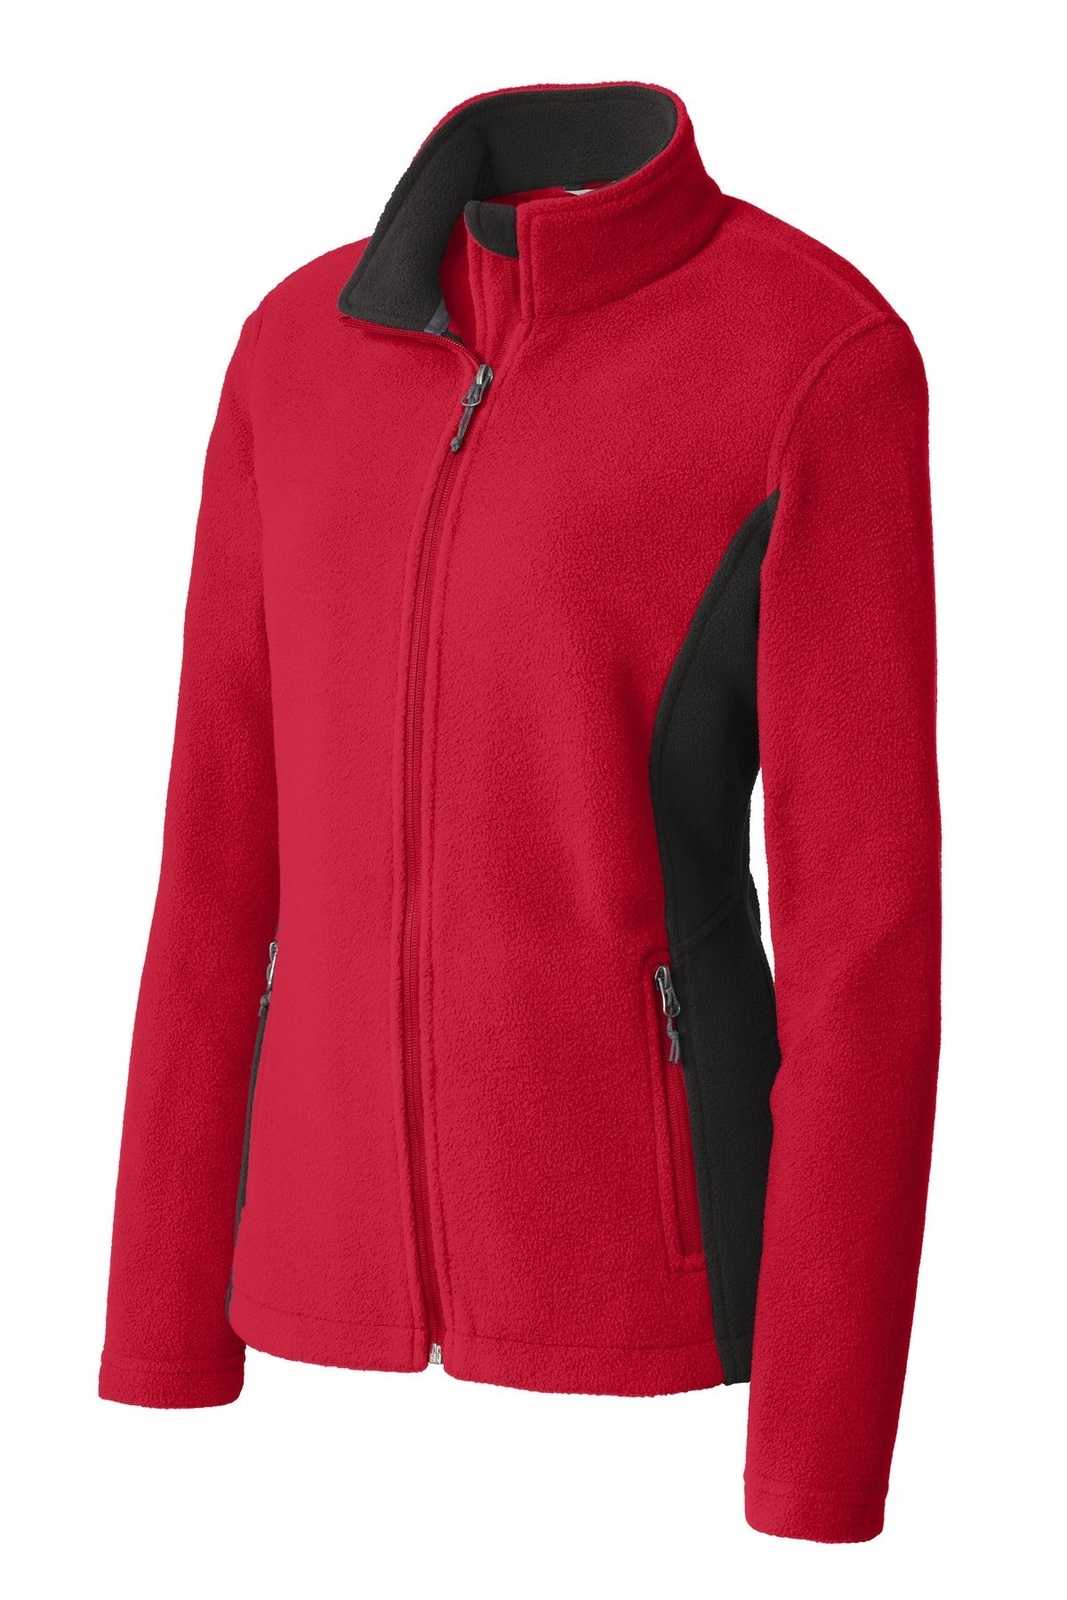 Port Authority L216 Ladies Colorblock Value Fleece Jacket - Rich Red Black - HIT a Double - 5